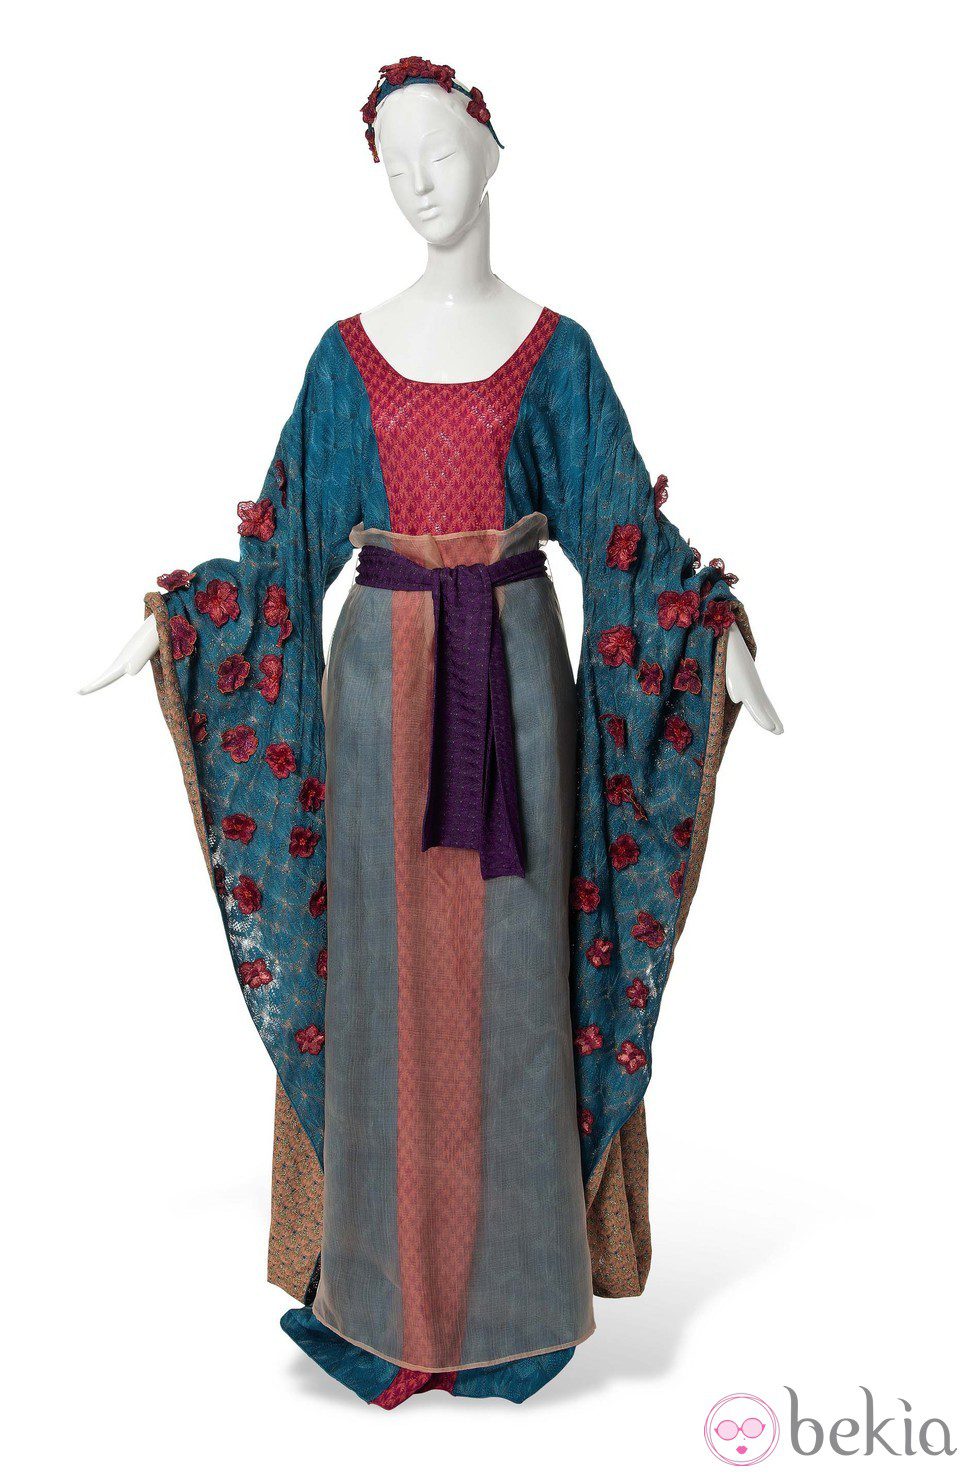 Vestido inspirado en Mulán de Missoni